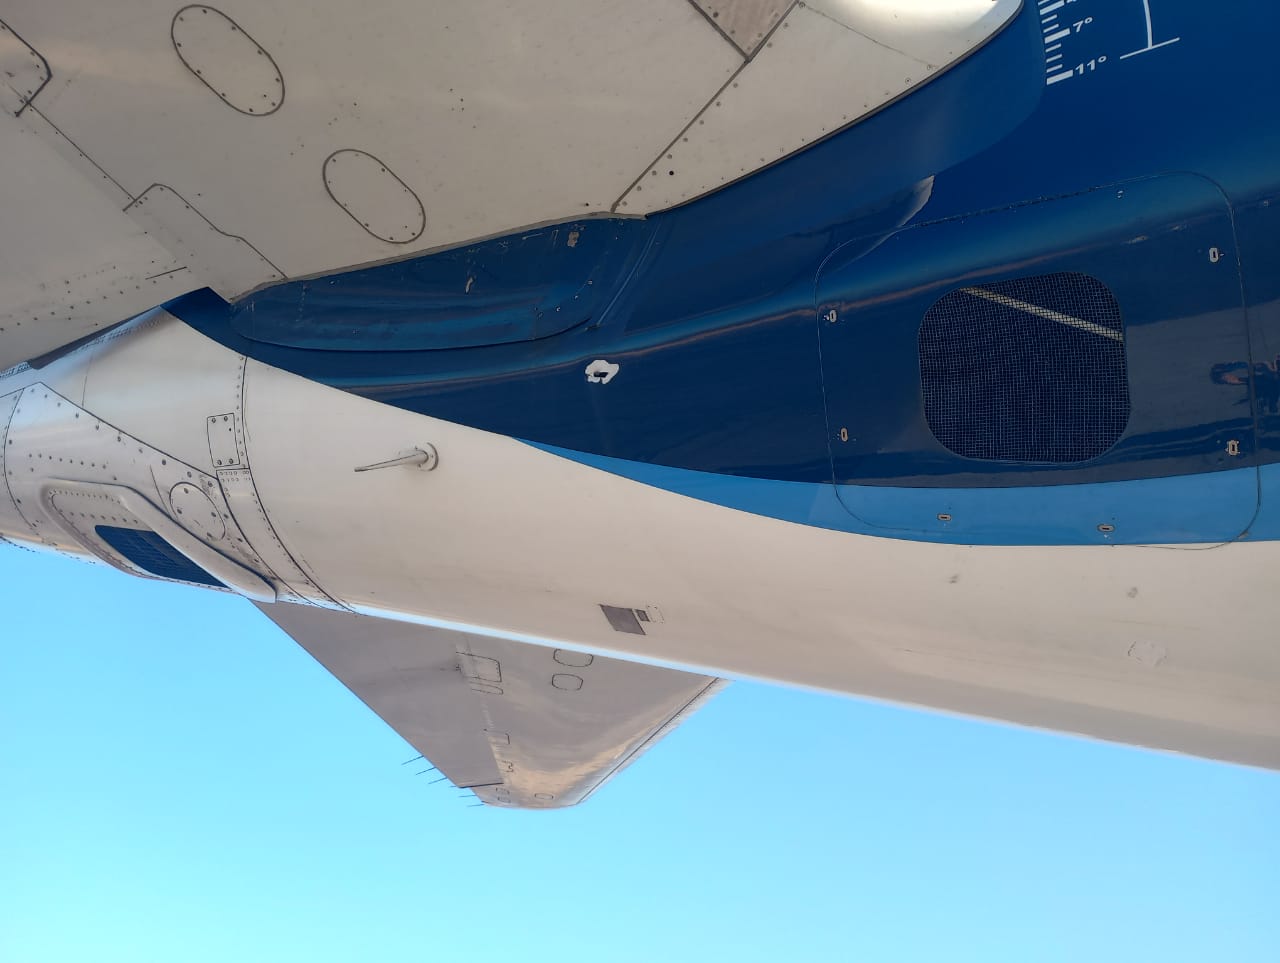 La Comandancia Aeropuerto de Culiacán confirmó la agresión en contra de una aeronave comercial XA VSU